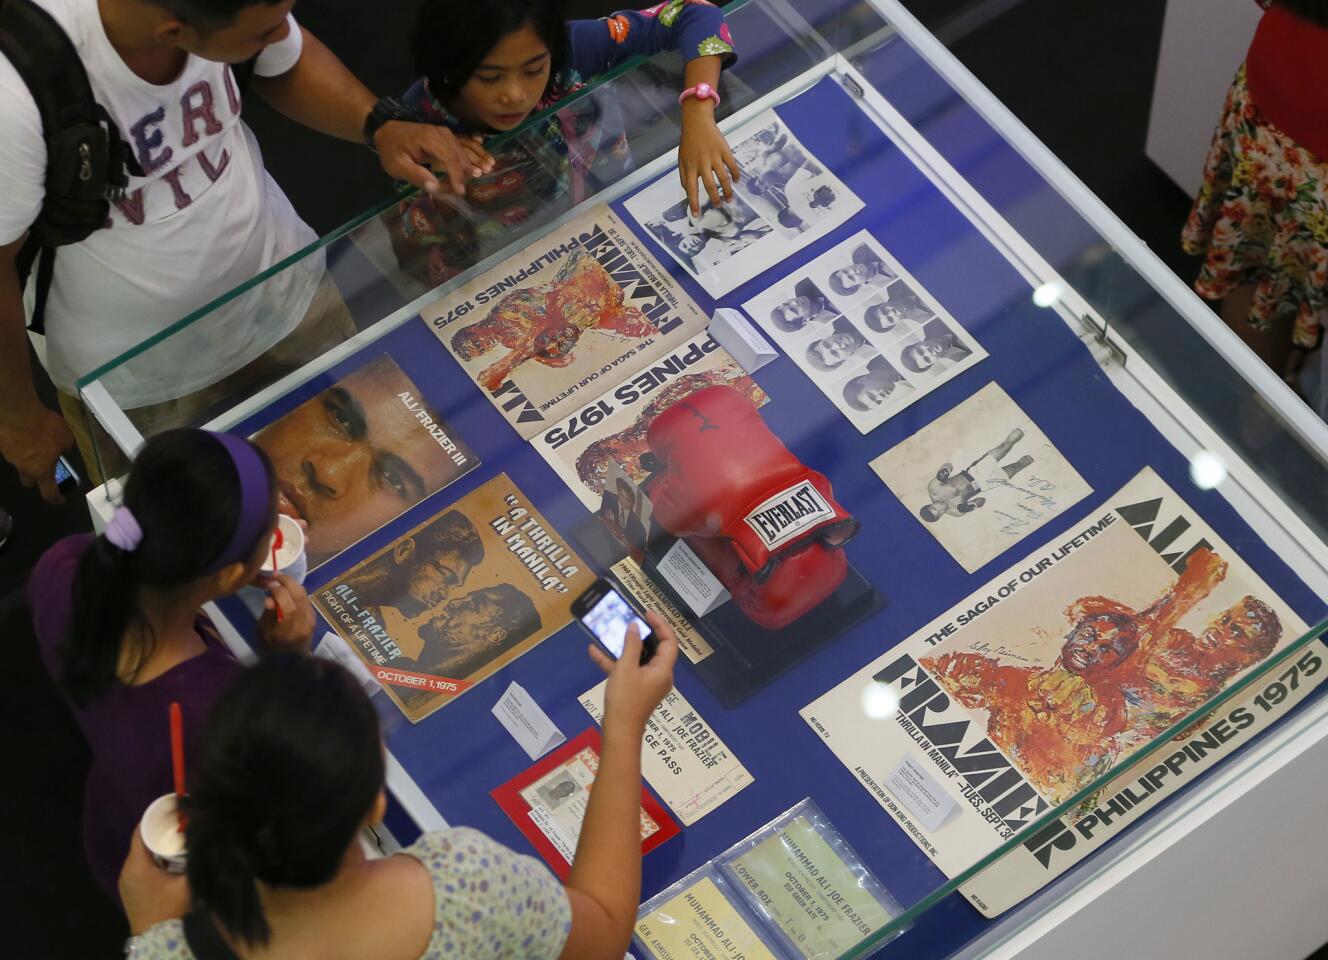 "Thrilla in Manila" exhibit